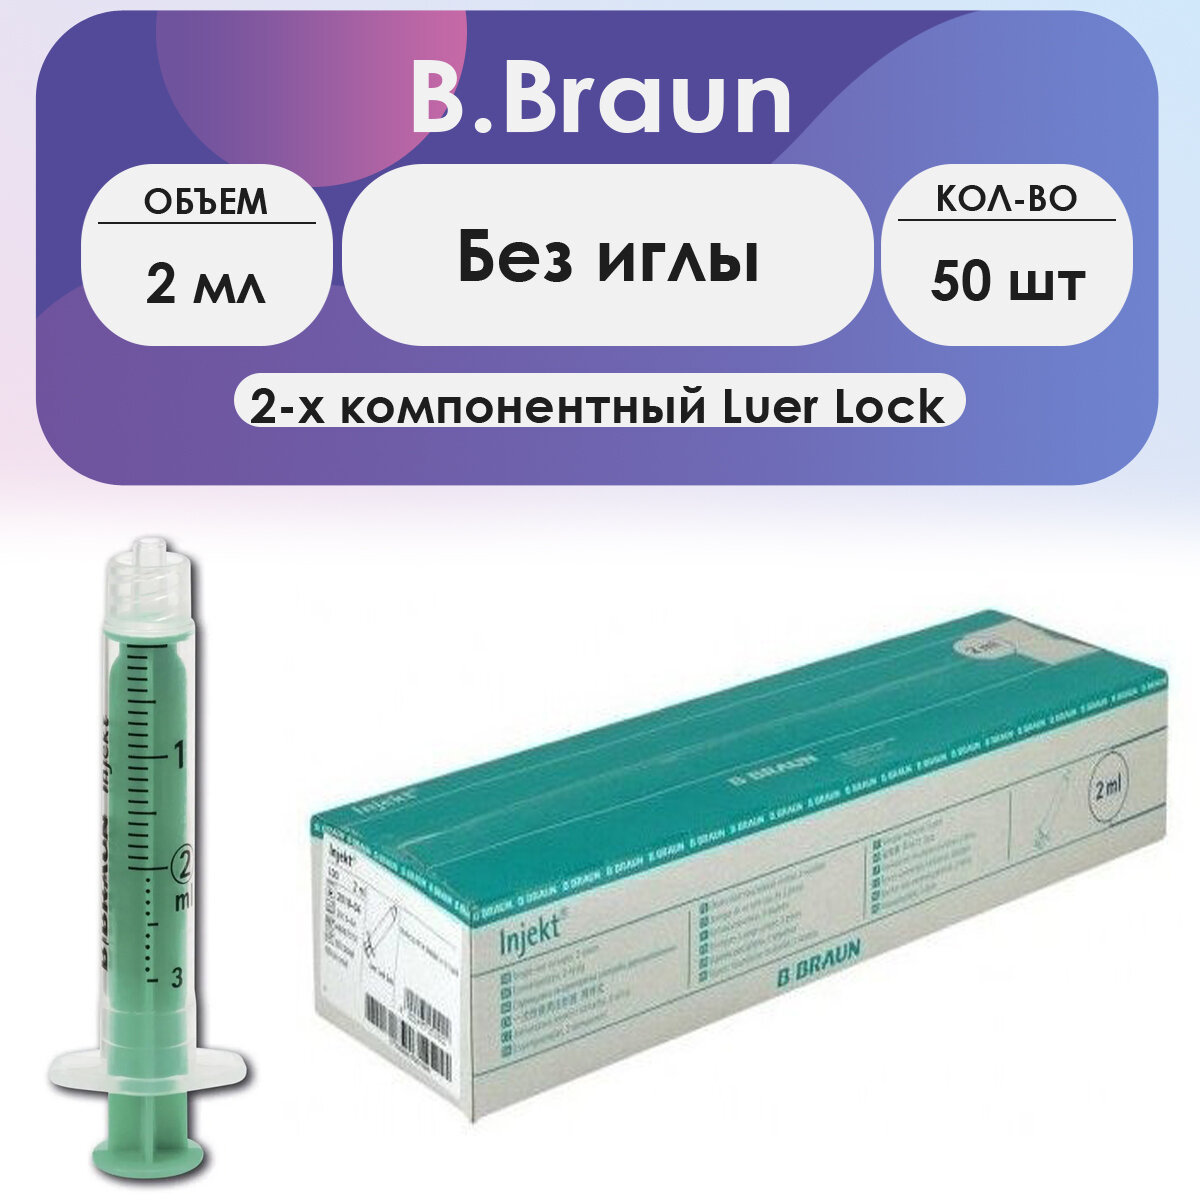 Шприц B.Braun Injekt (2-комп.) 2мл, без иглы, Luer Lock - 50 шт